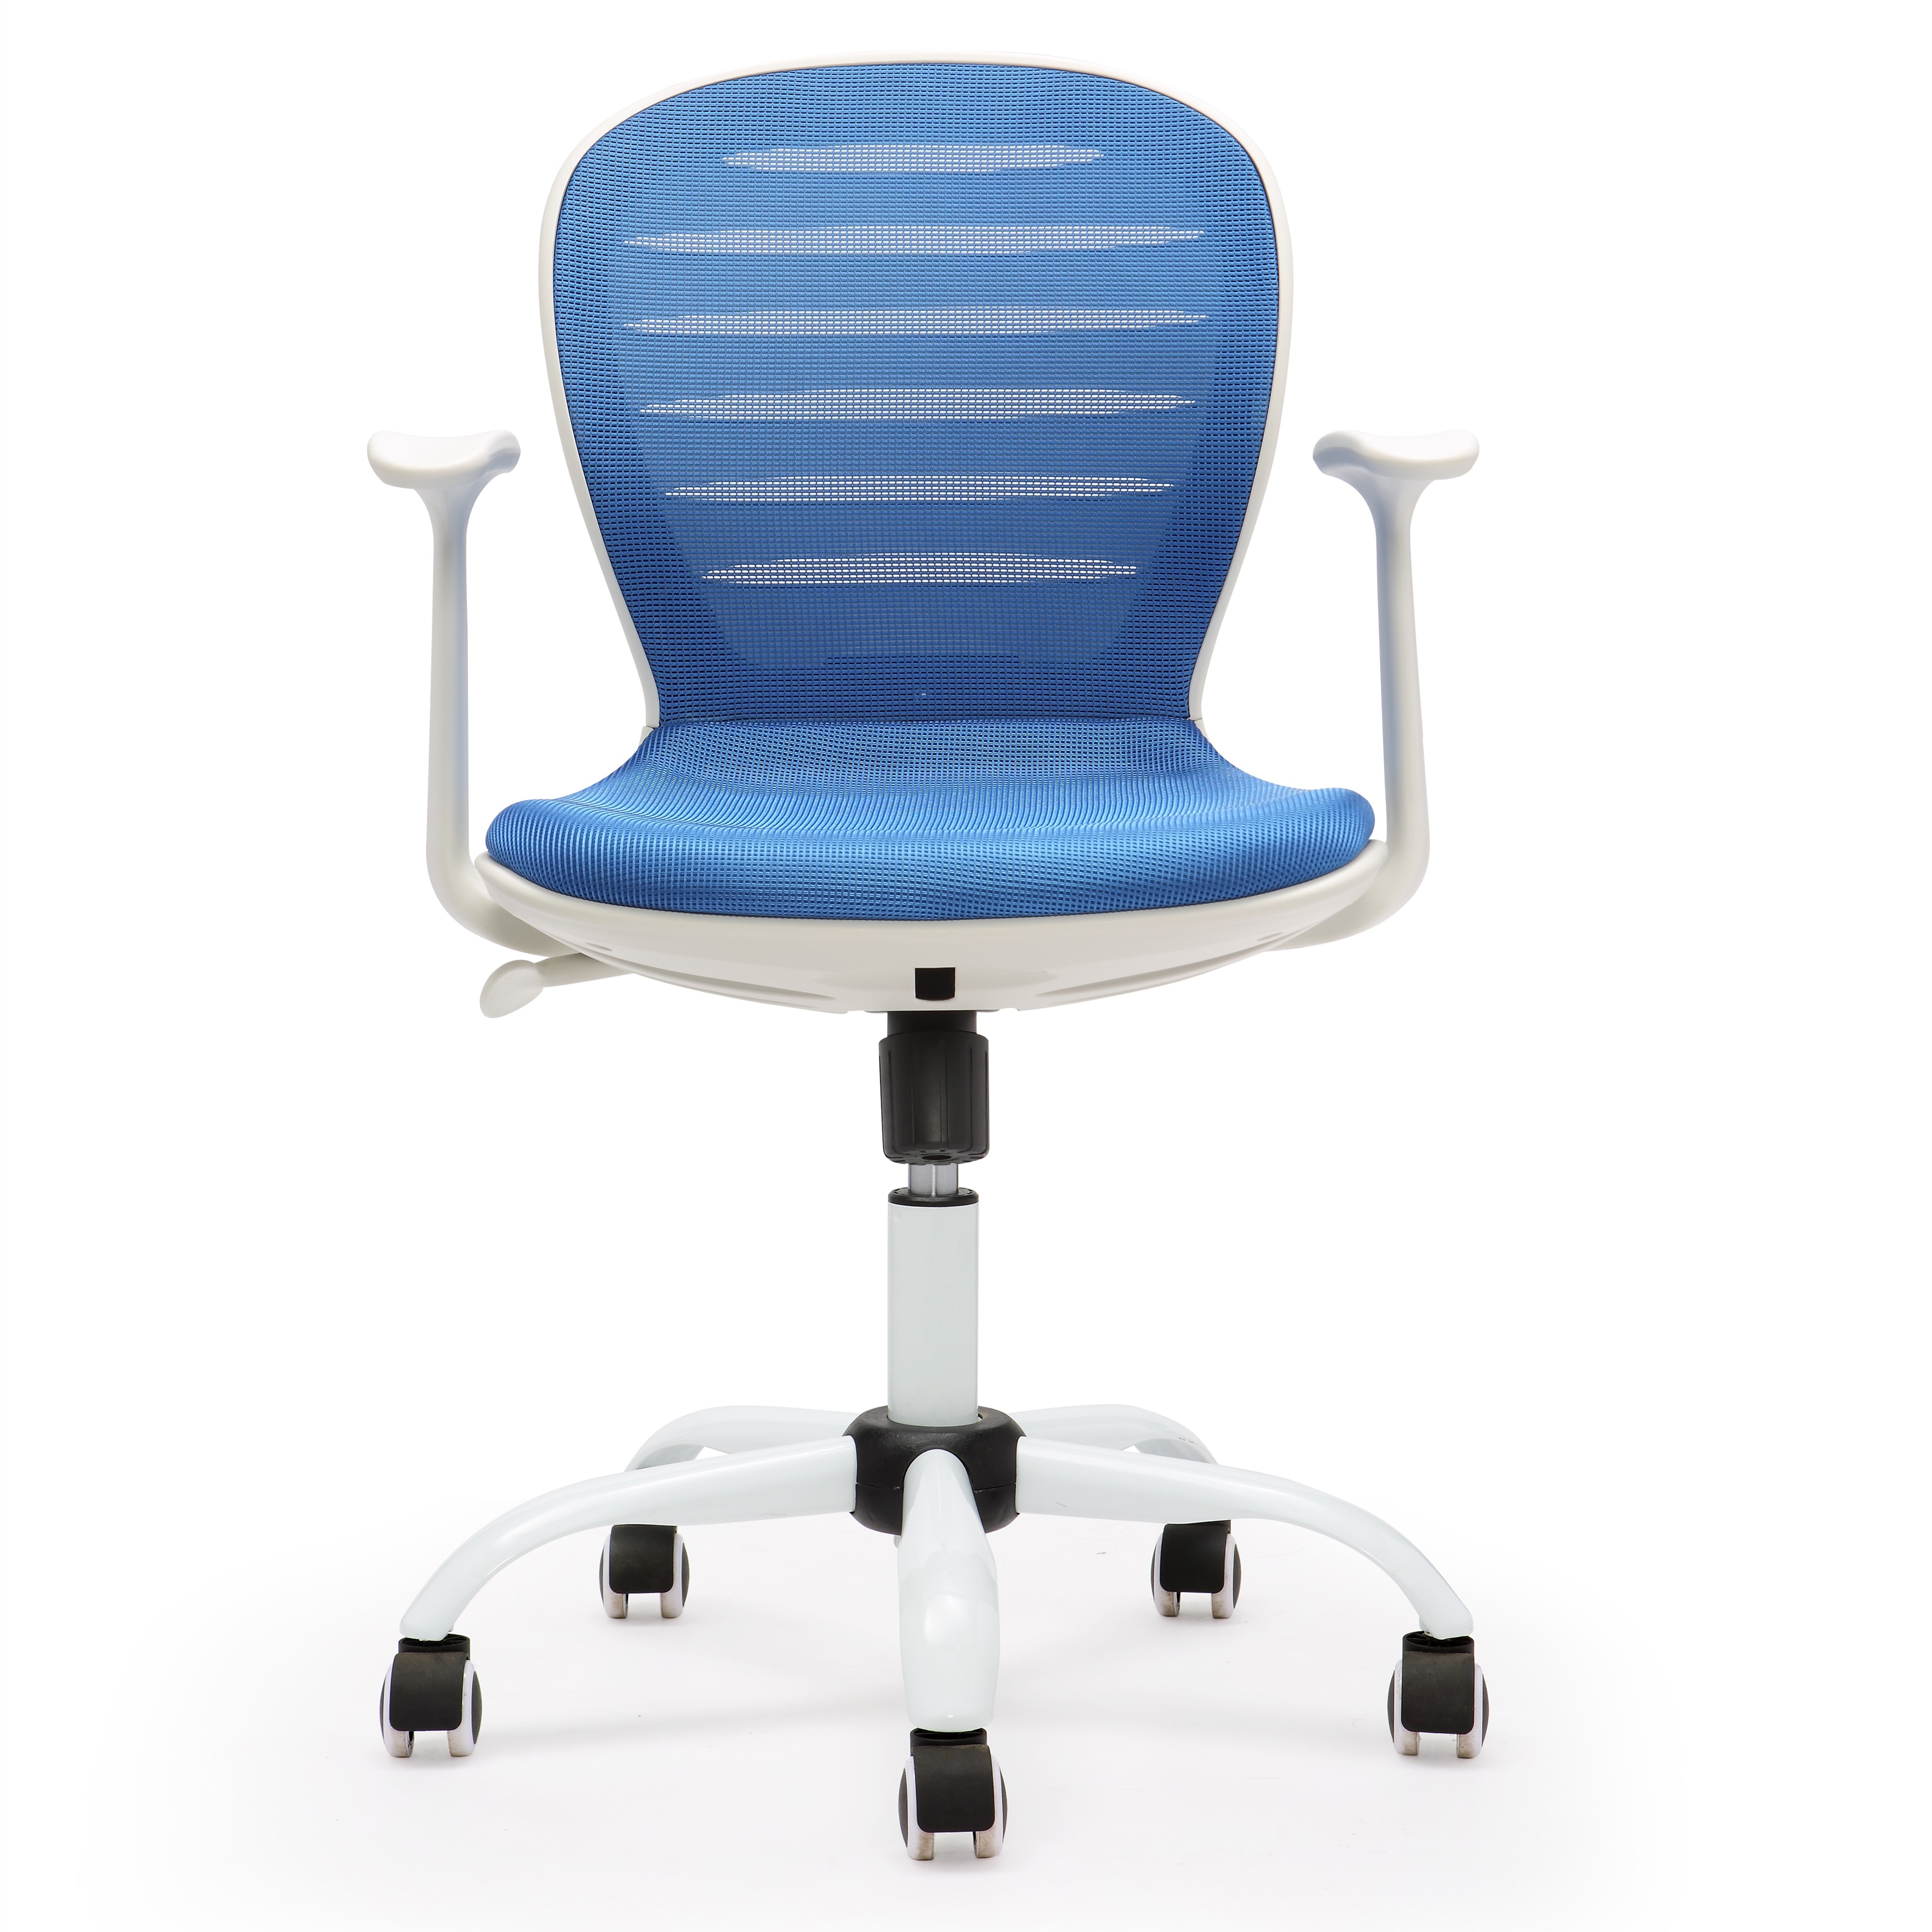 简约现代办公椅电脑椅 MS7003G-WH 白胶